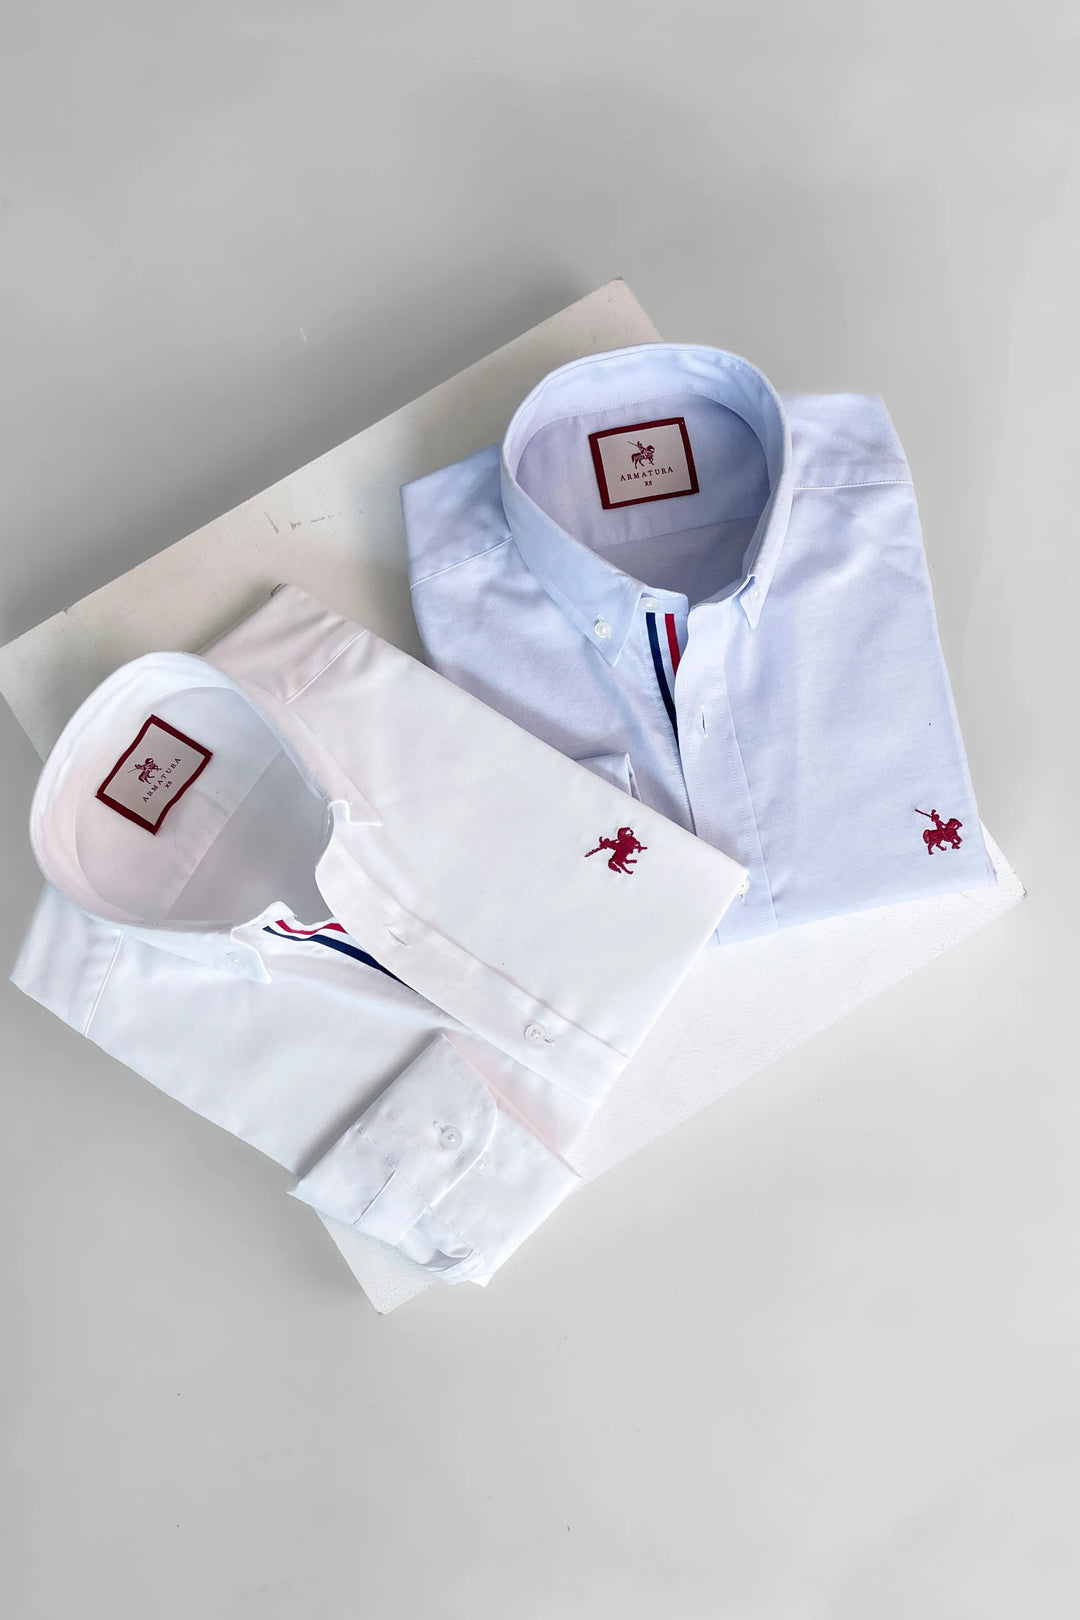 Imagen 2 camisas France armatura, camisas blanca y azul con detalles de colores bandera de Francia en el cuello.